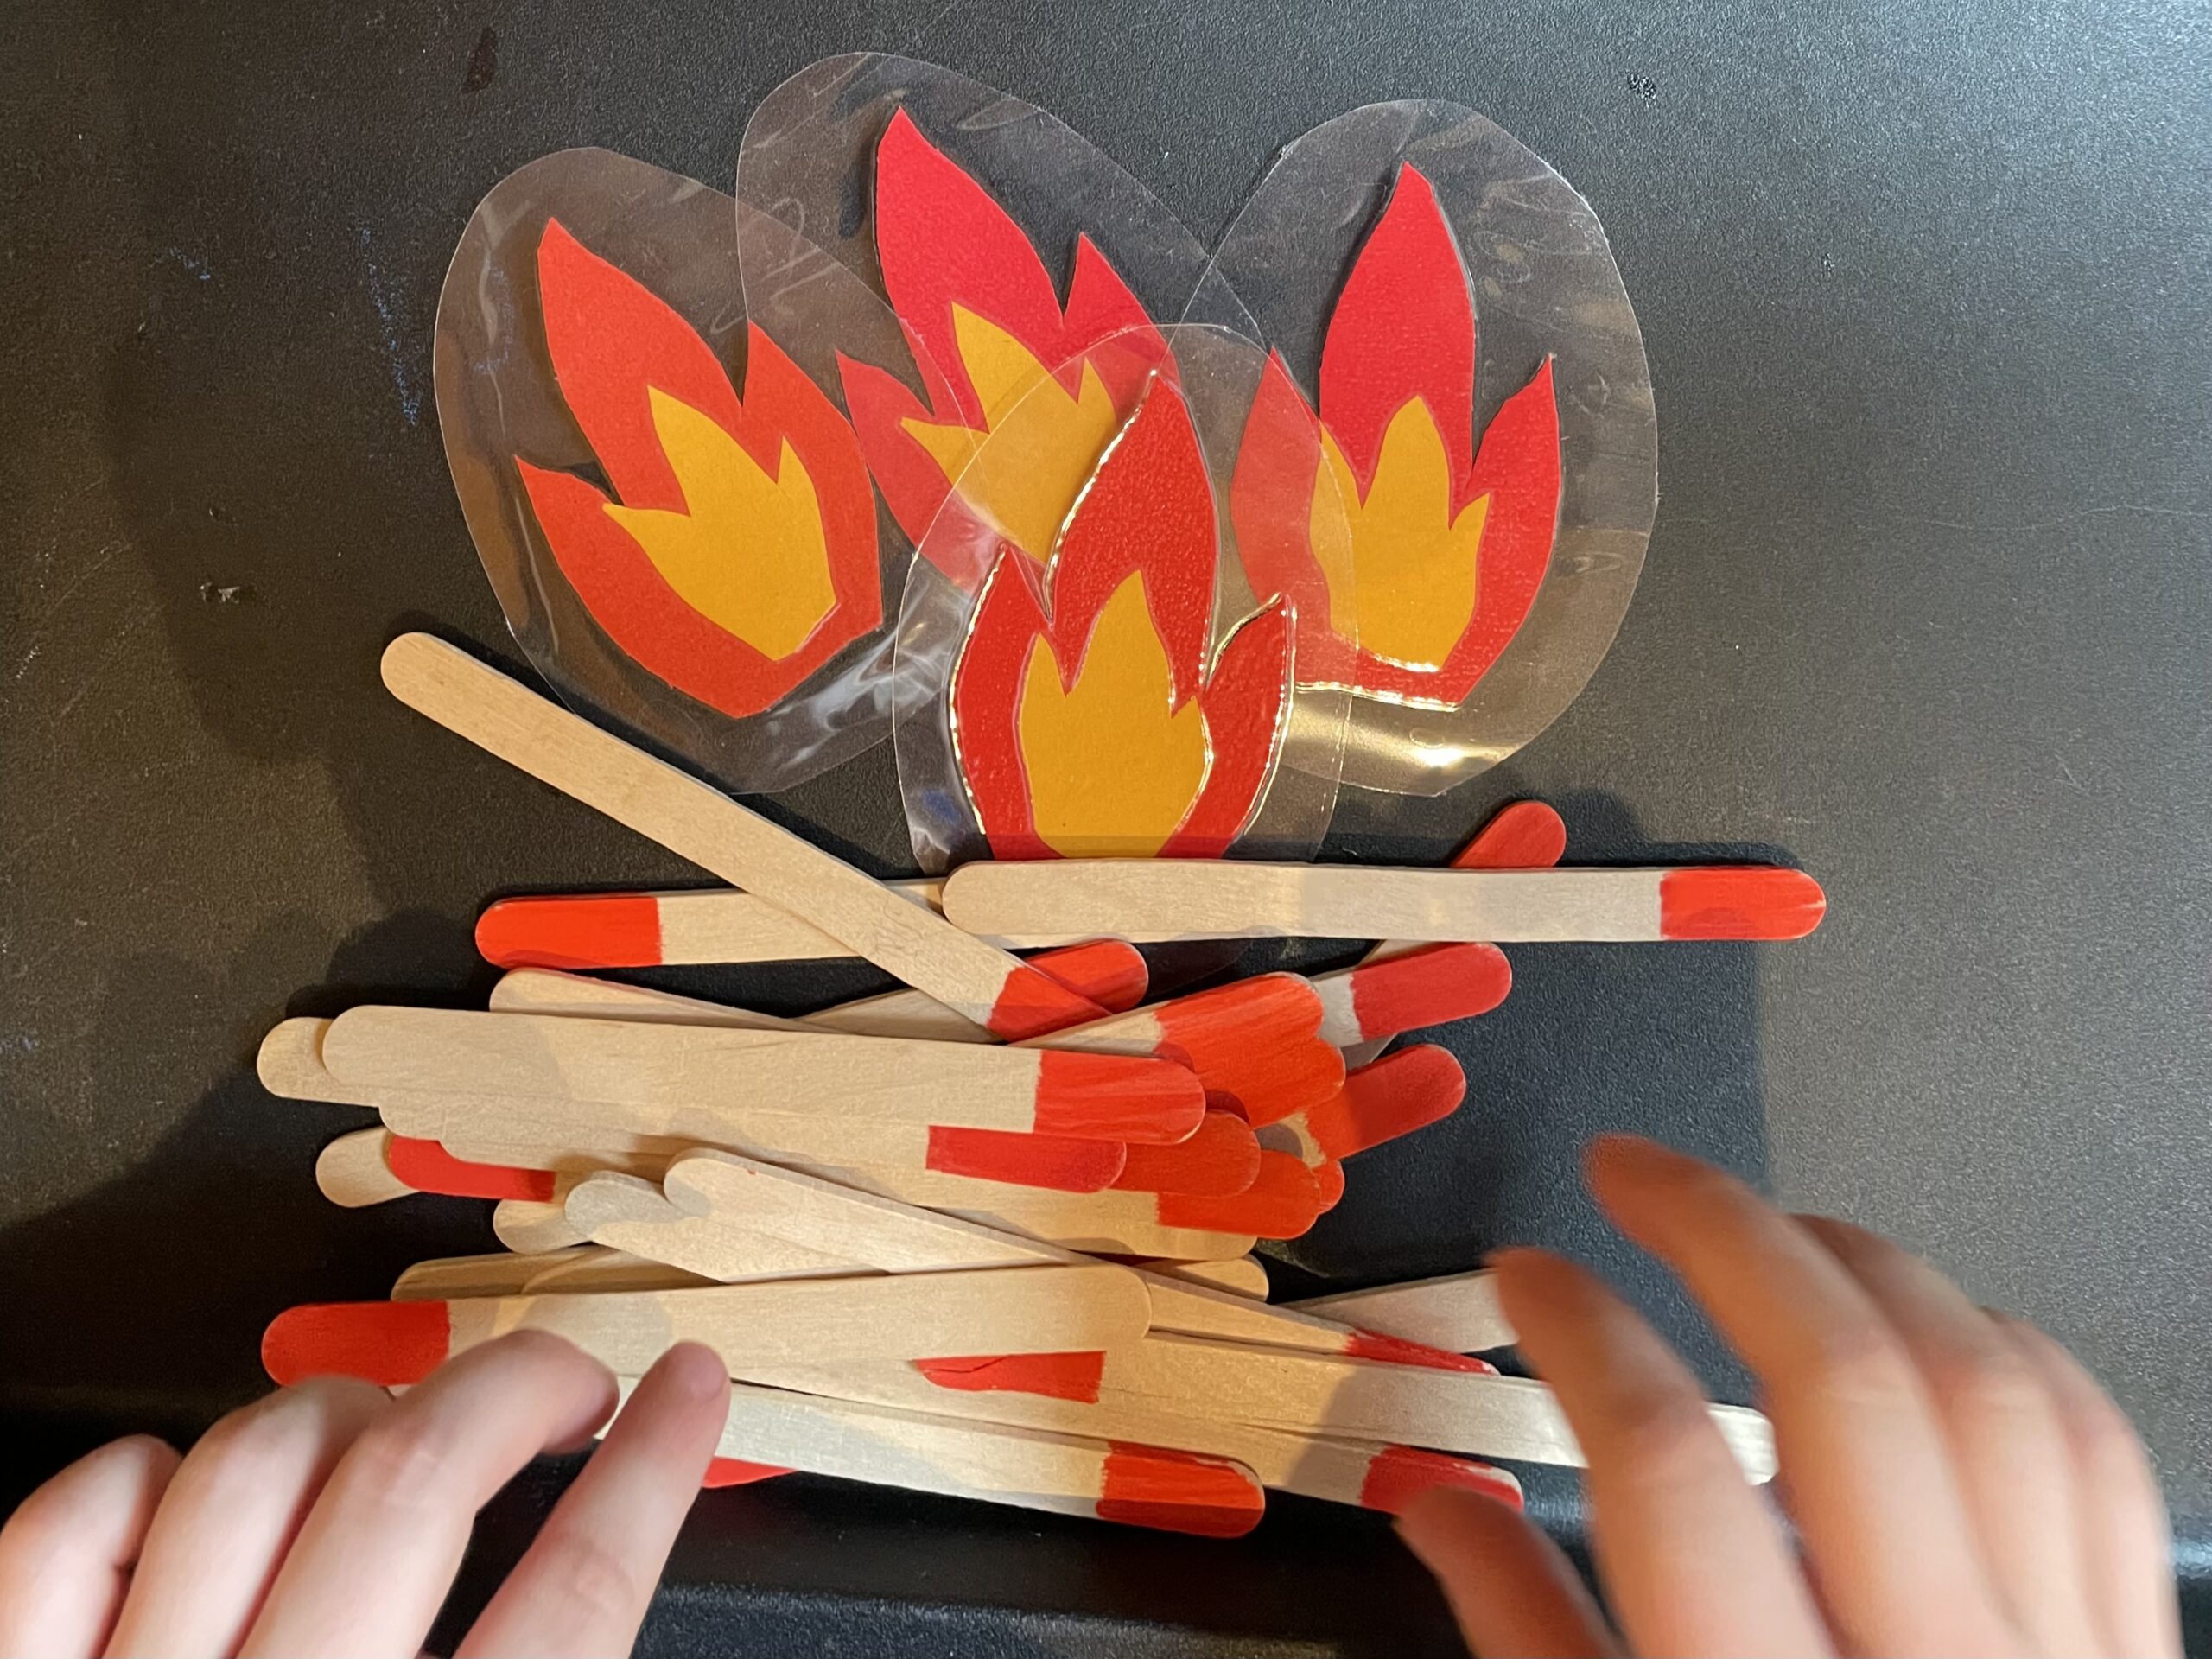 Bild zum Schritt 25 für das Bastel- und DIY-Abenteuer für Kinder: 'Ein großes Feuer legen.'